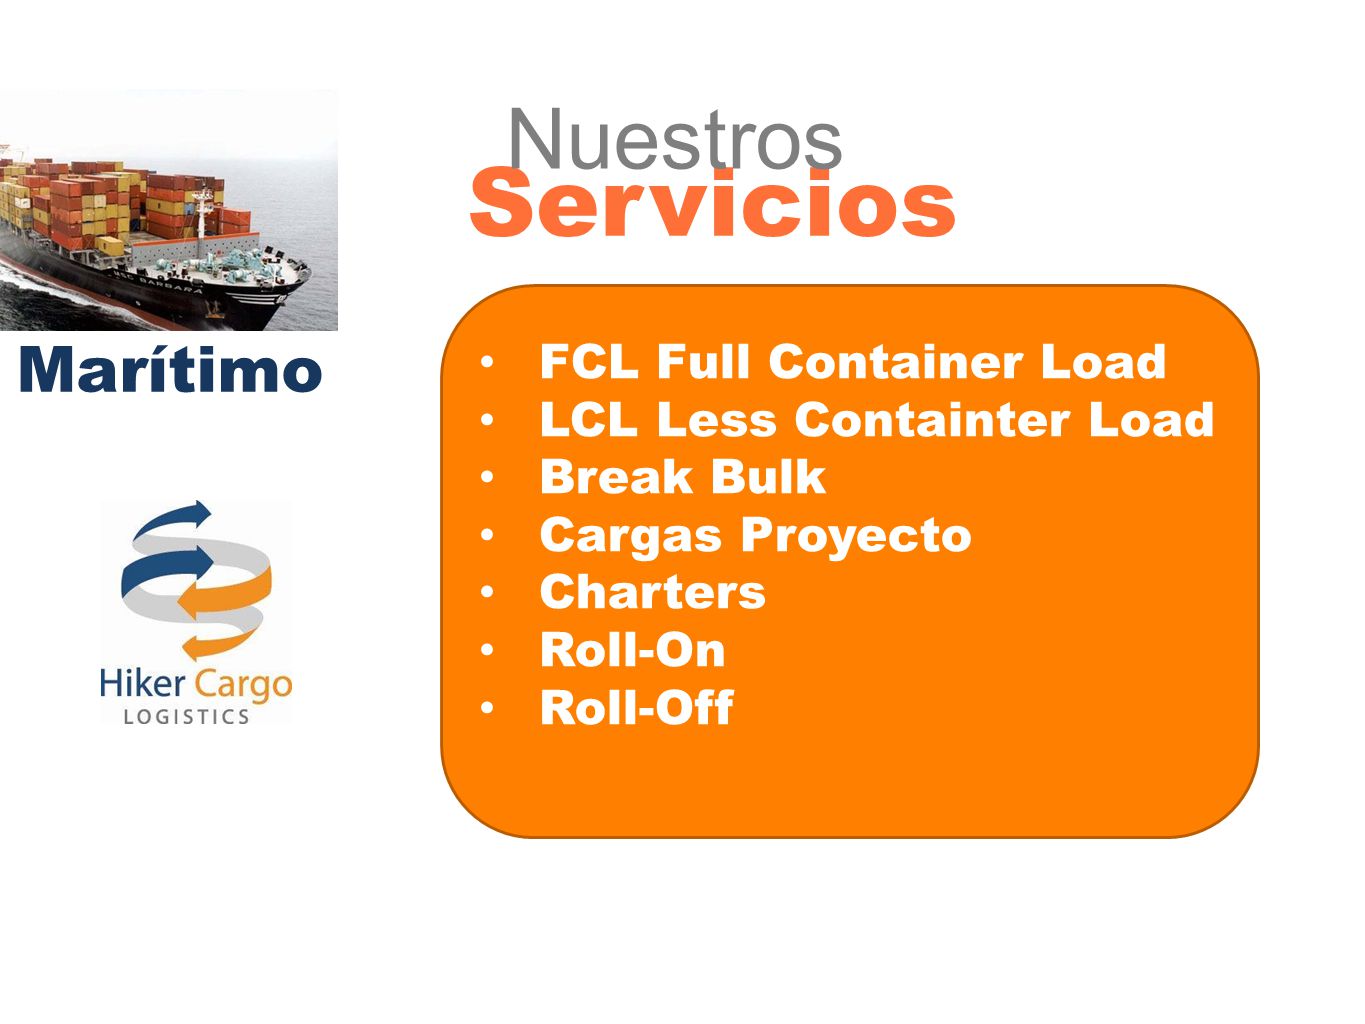 Servicios Nuestros Marítimo FCL Full Container Load